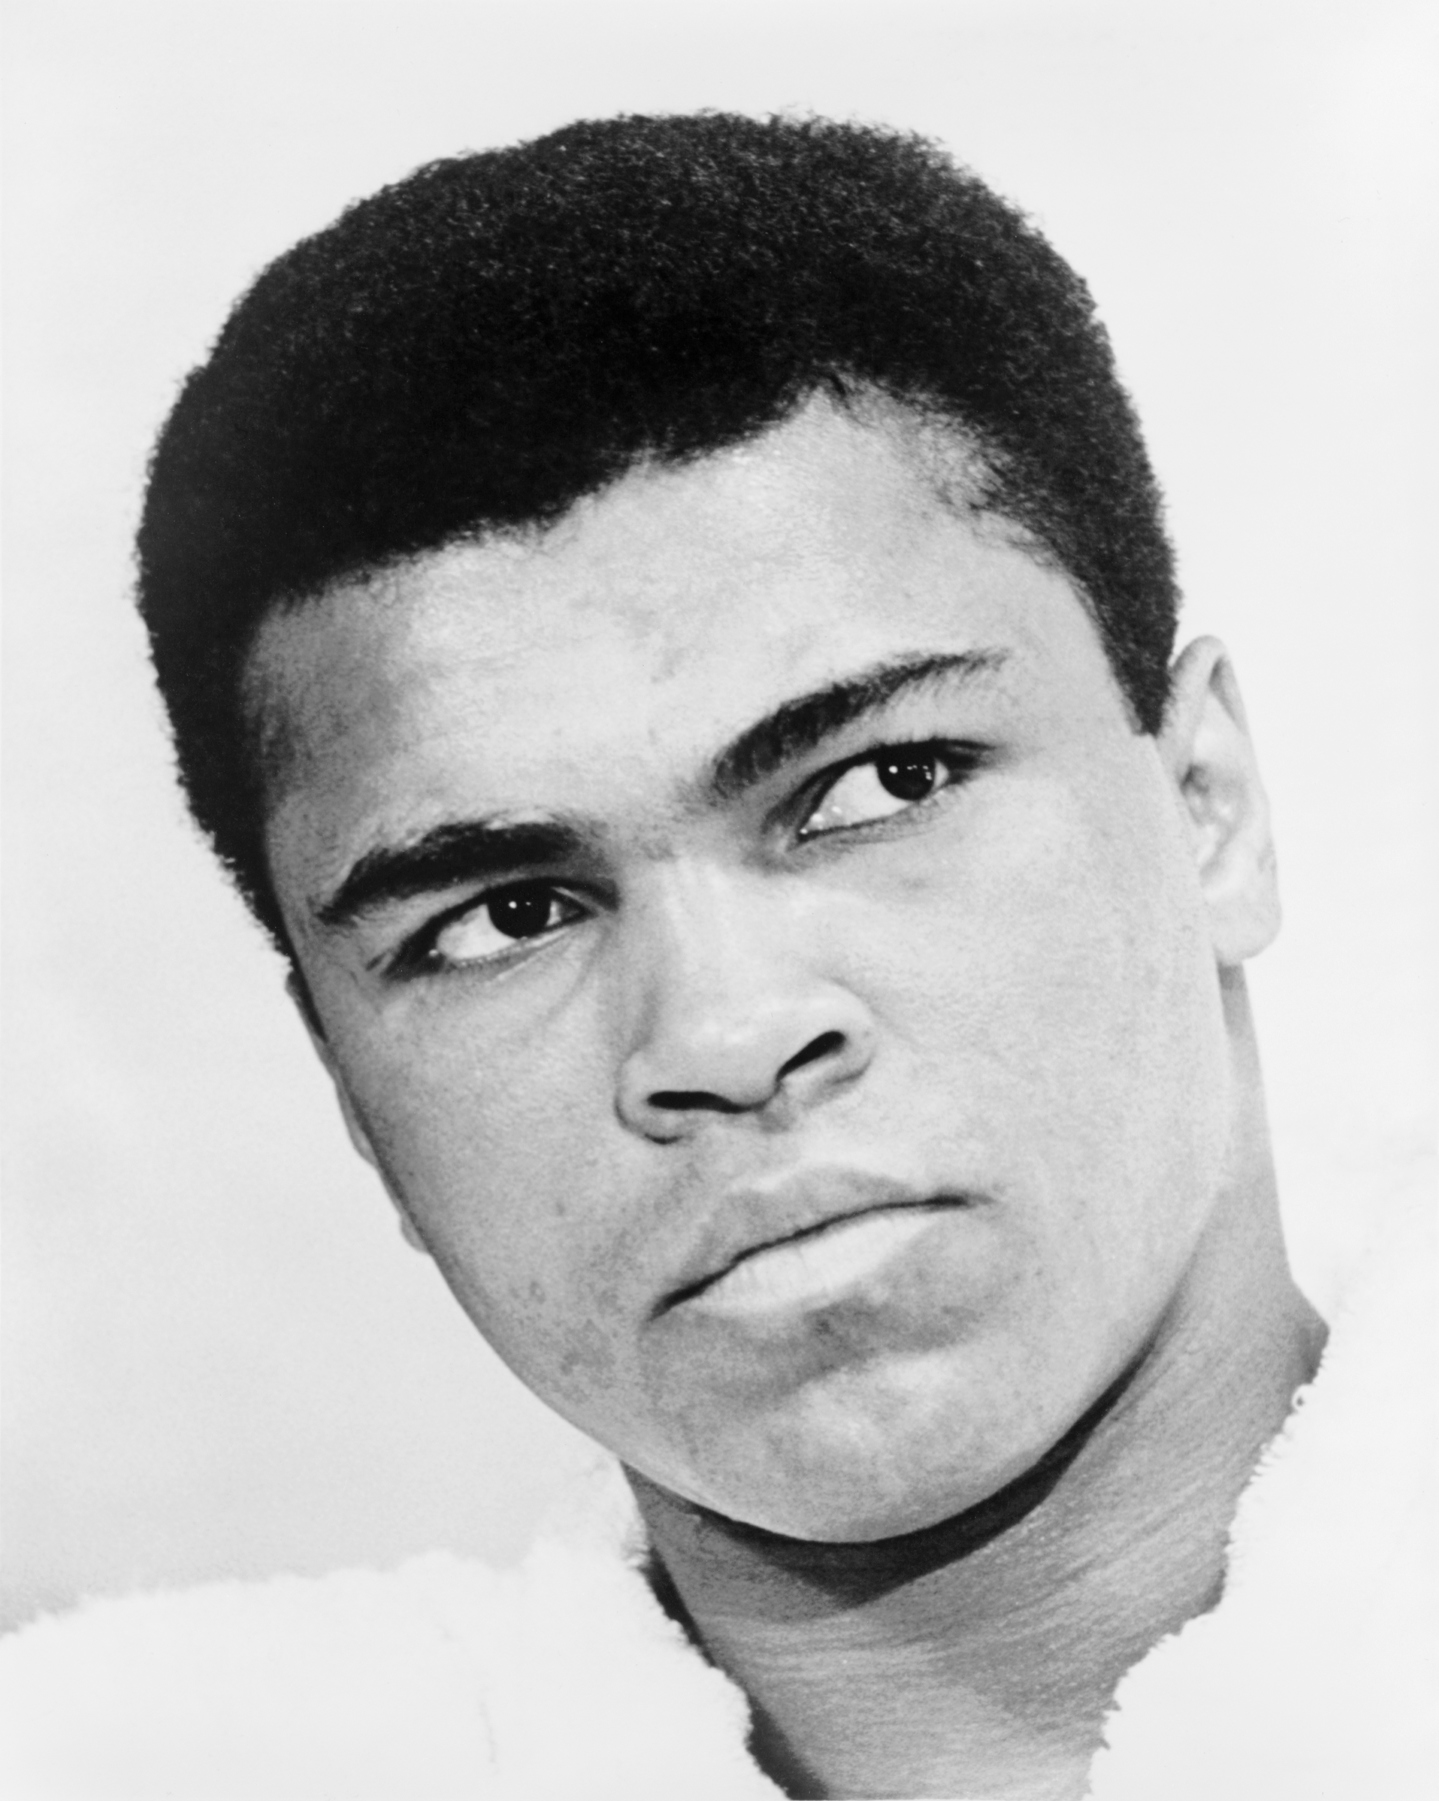 Wat is de bijnaam van Muhammad Ali? 